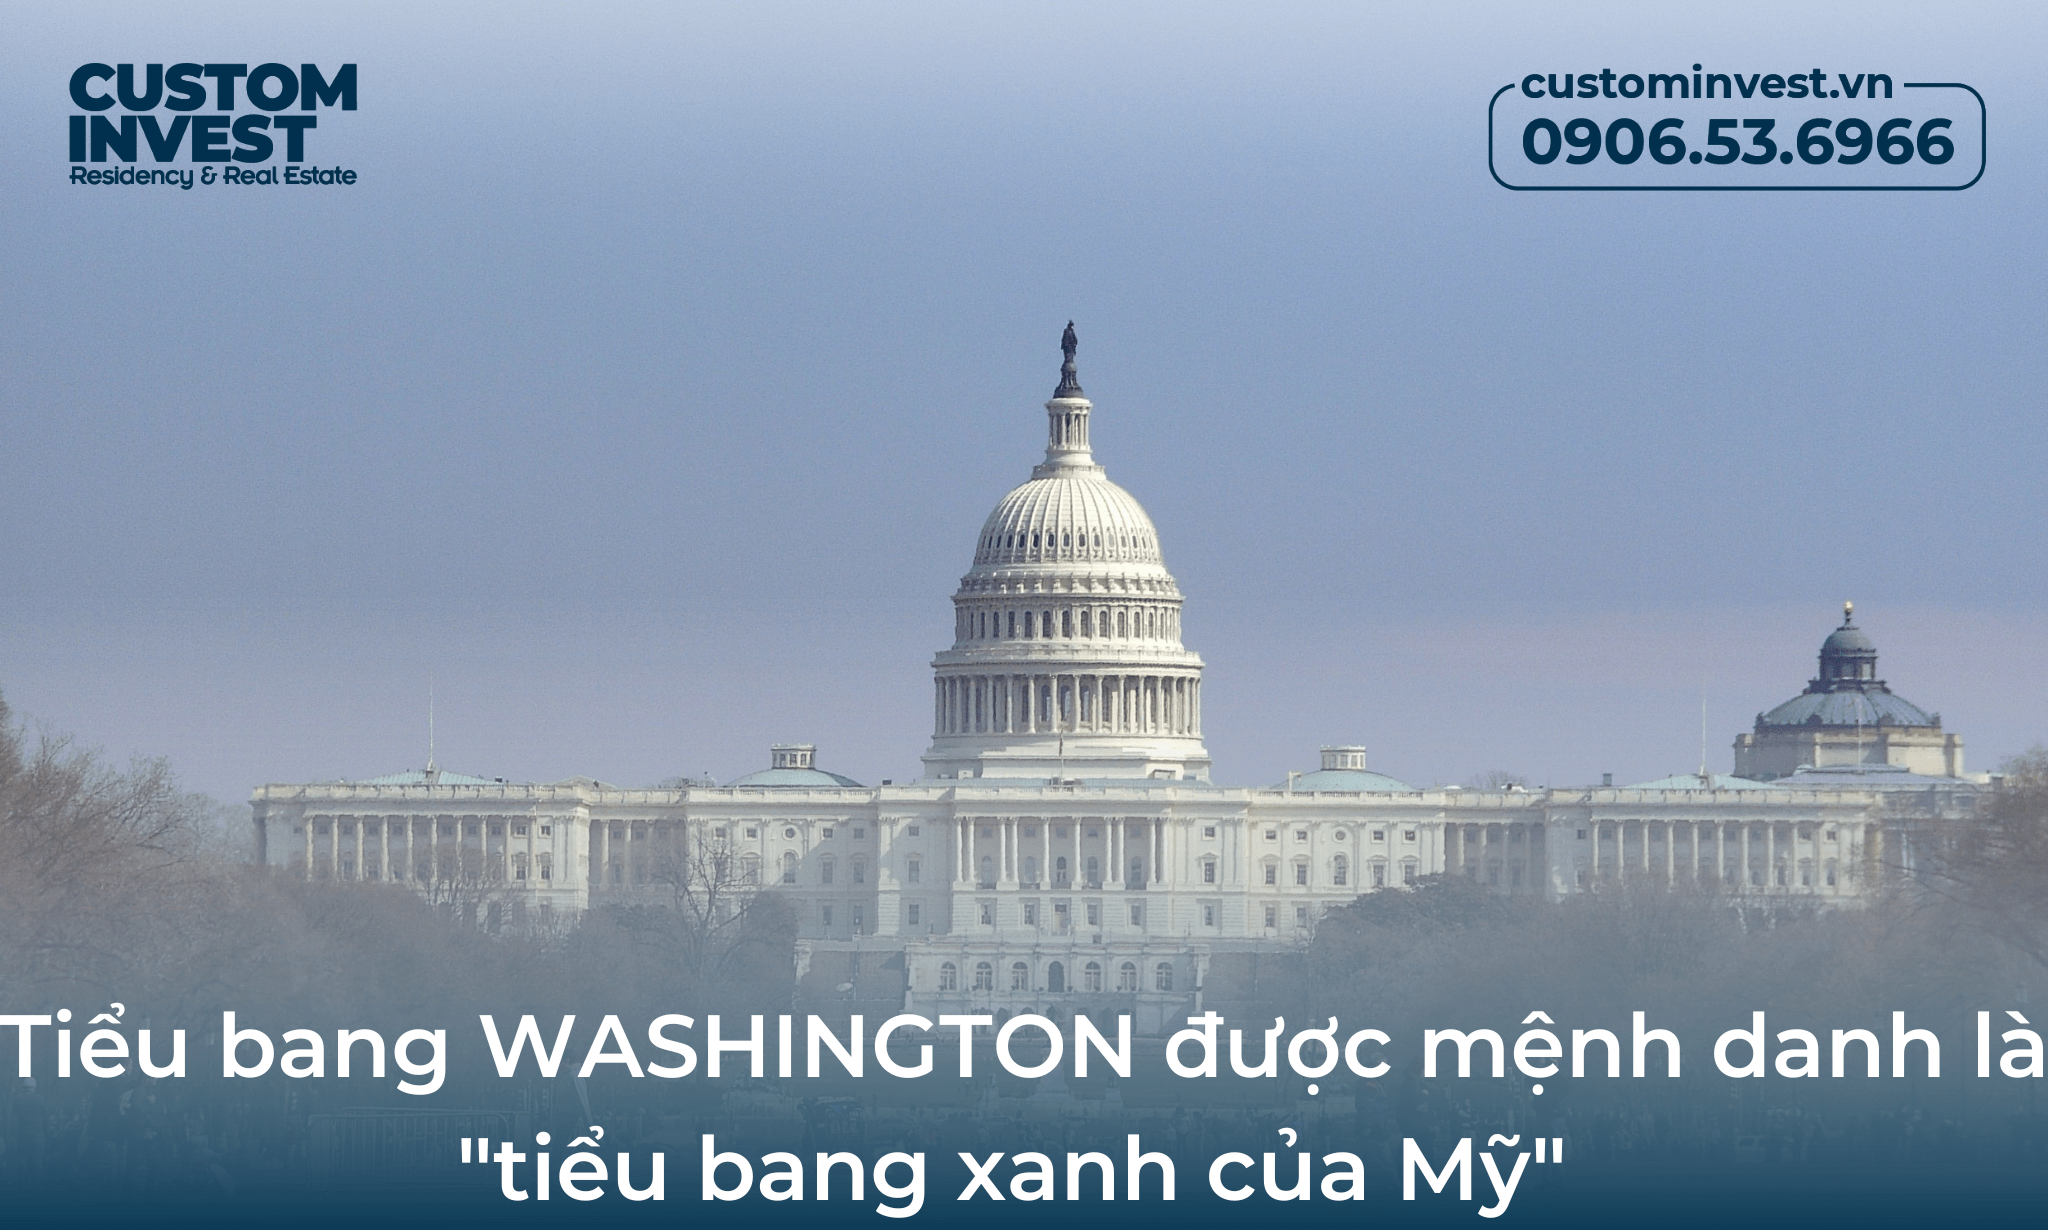 Tiểu bang Washington là tên gọi được đặt theo tên vị tổng thống đầu tiên của Mỹ - George Washington